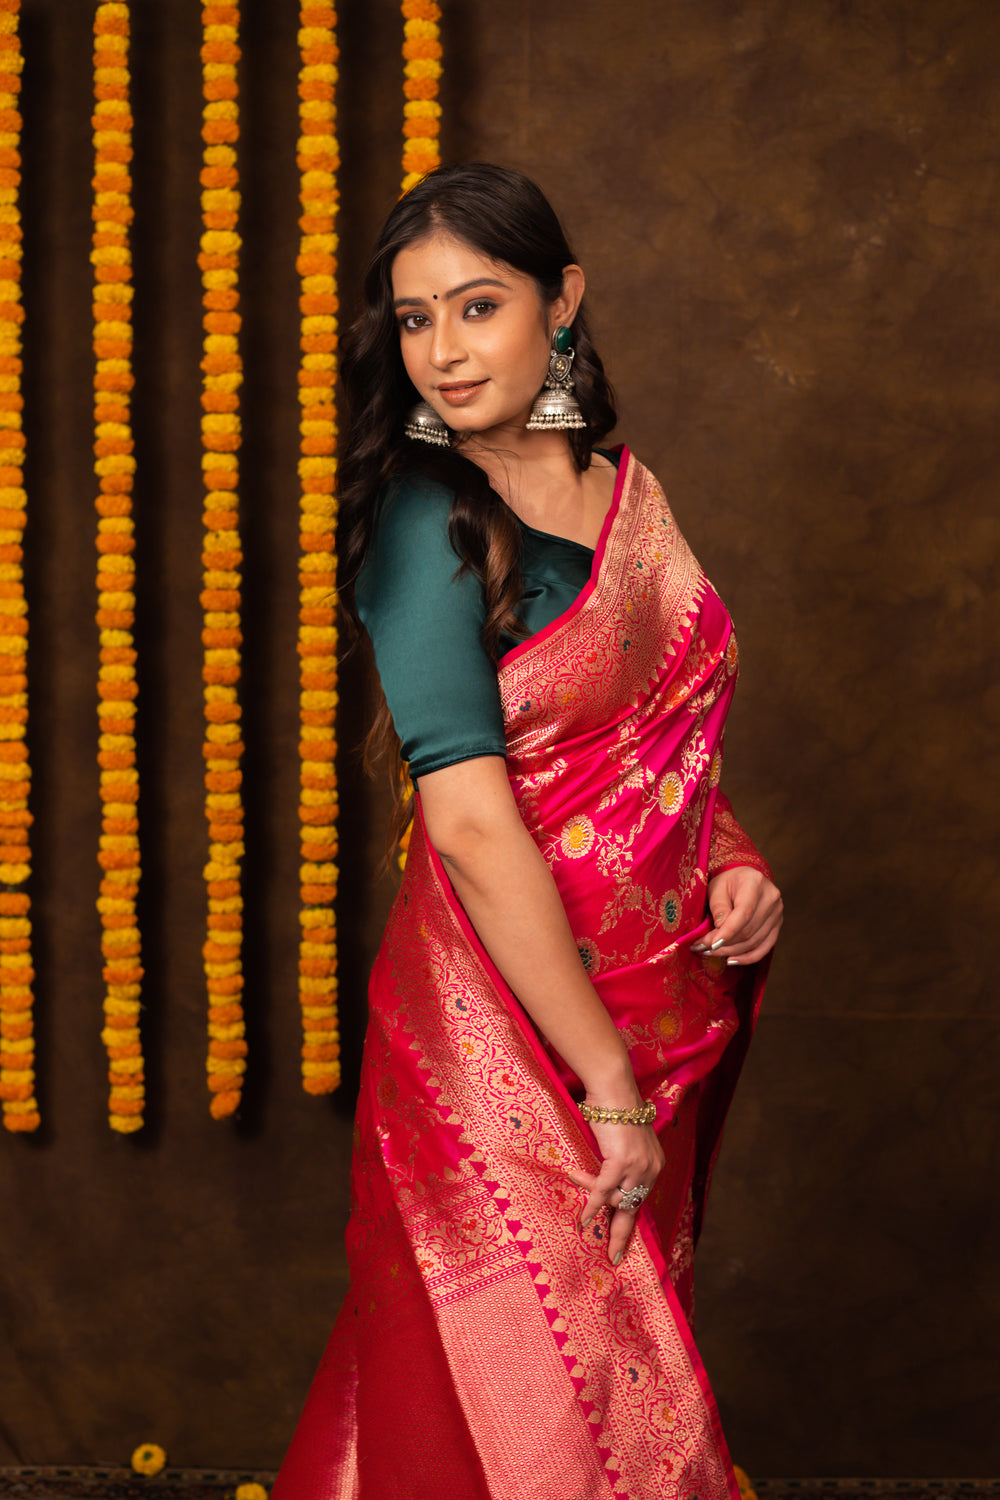 Rani Pink Saree Katan Silk Handwoven - Panaya 